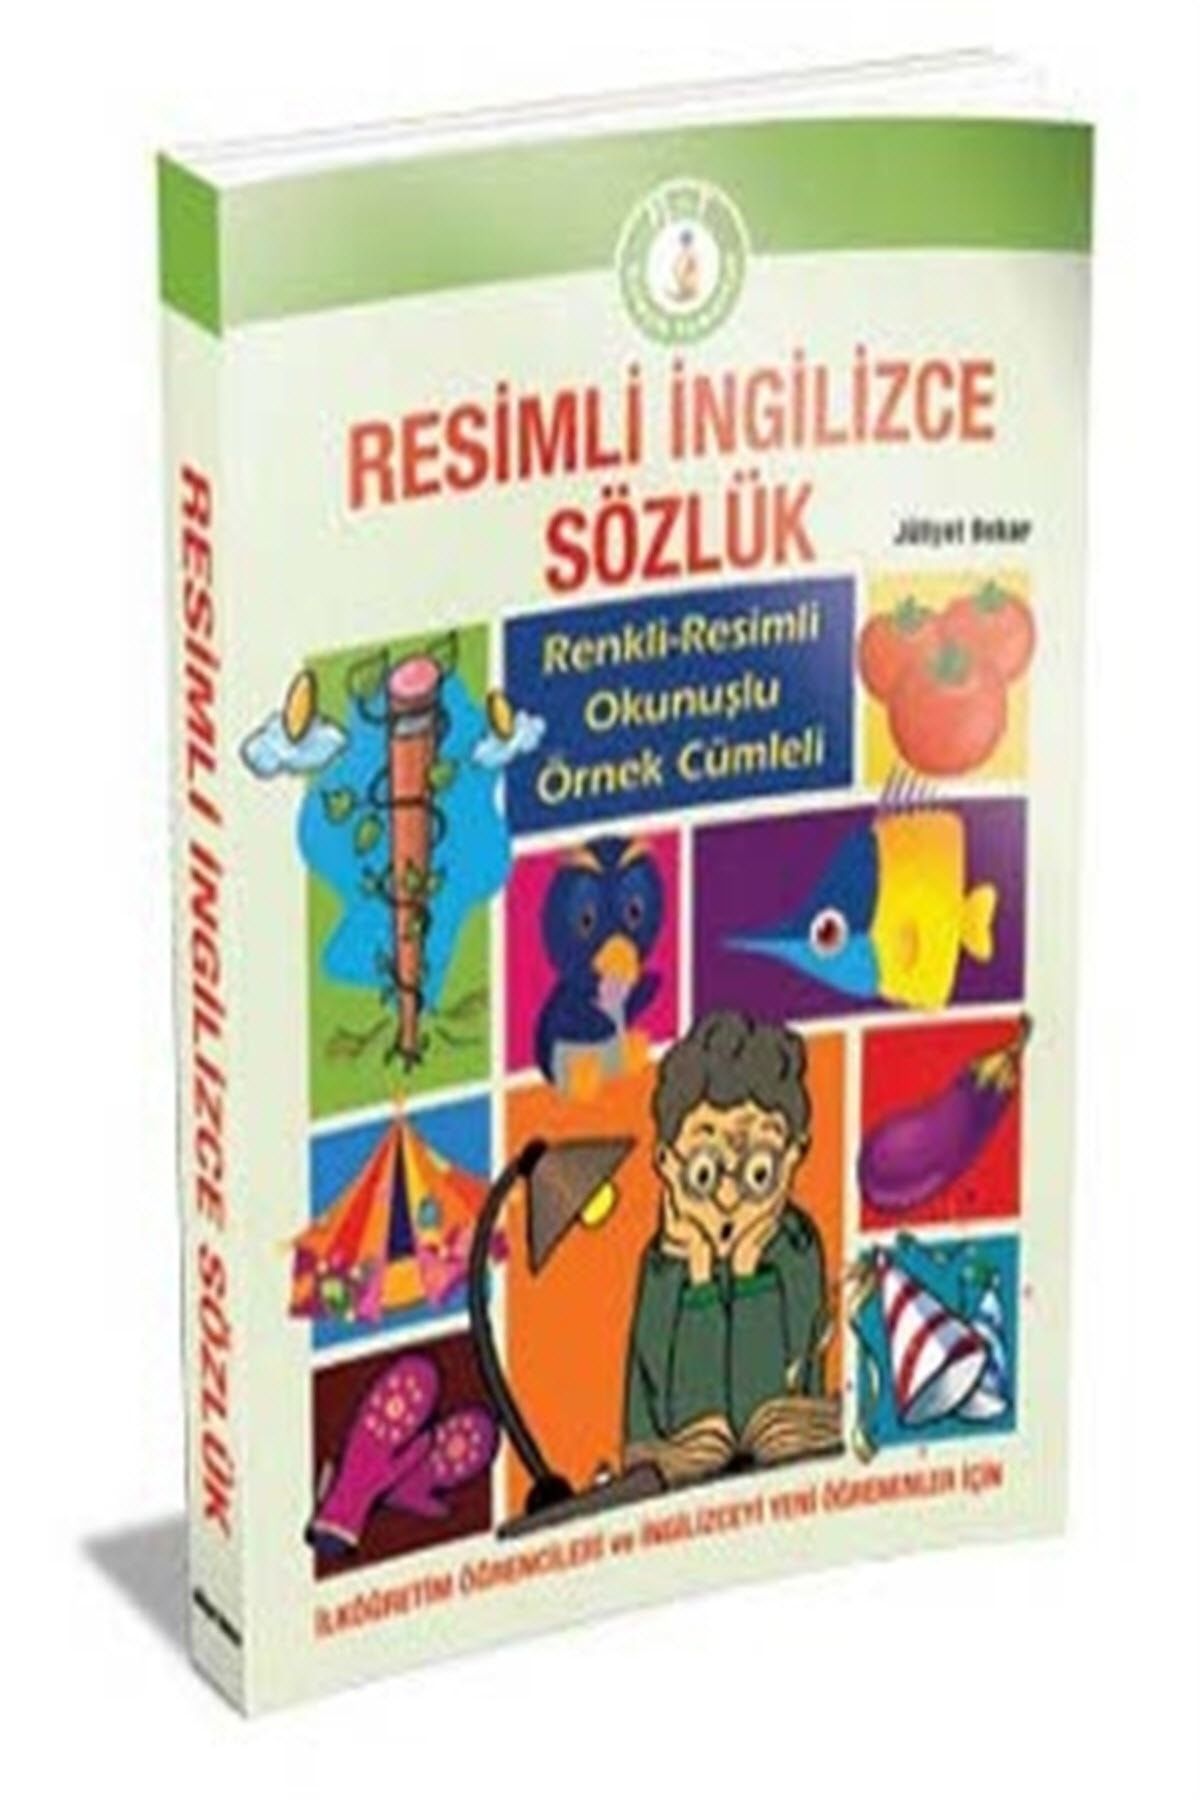 Birleşik Tomurcuk Grubu Resimli İngilizce - Türkçe Sözlük